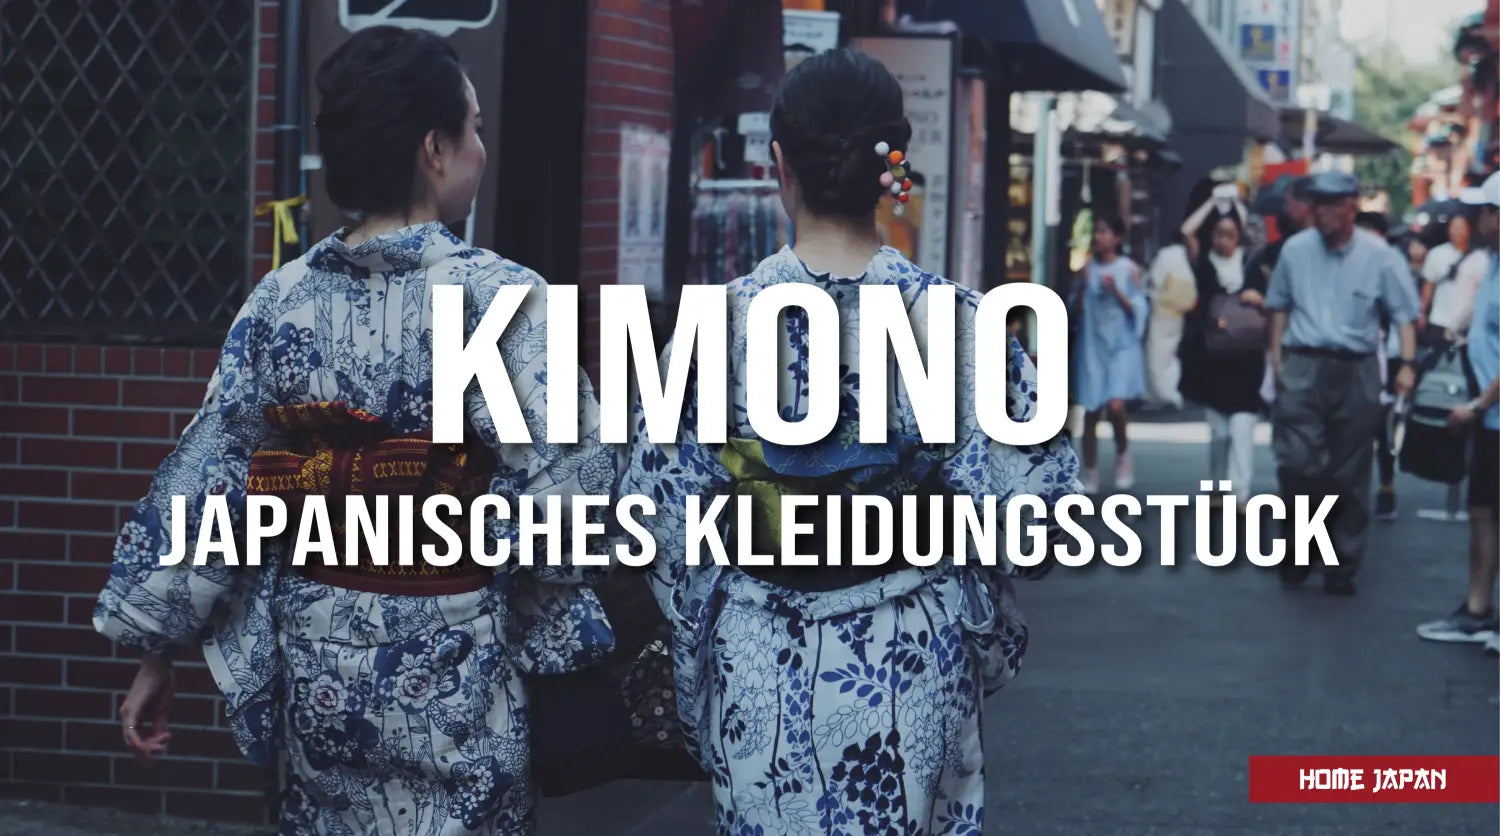 traditionelle kimonos